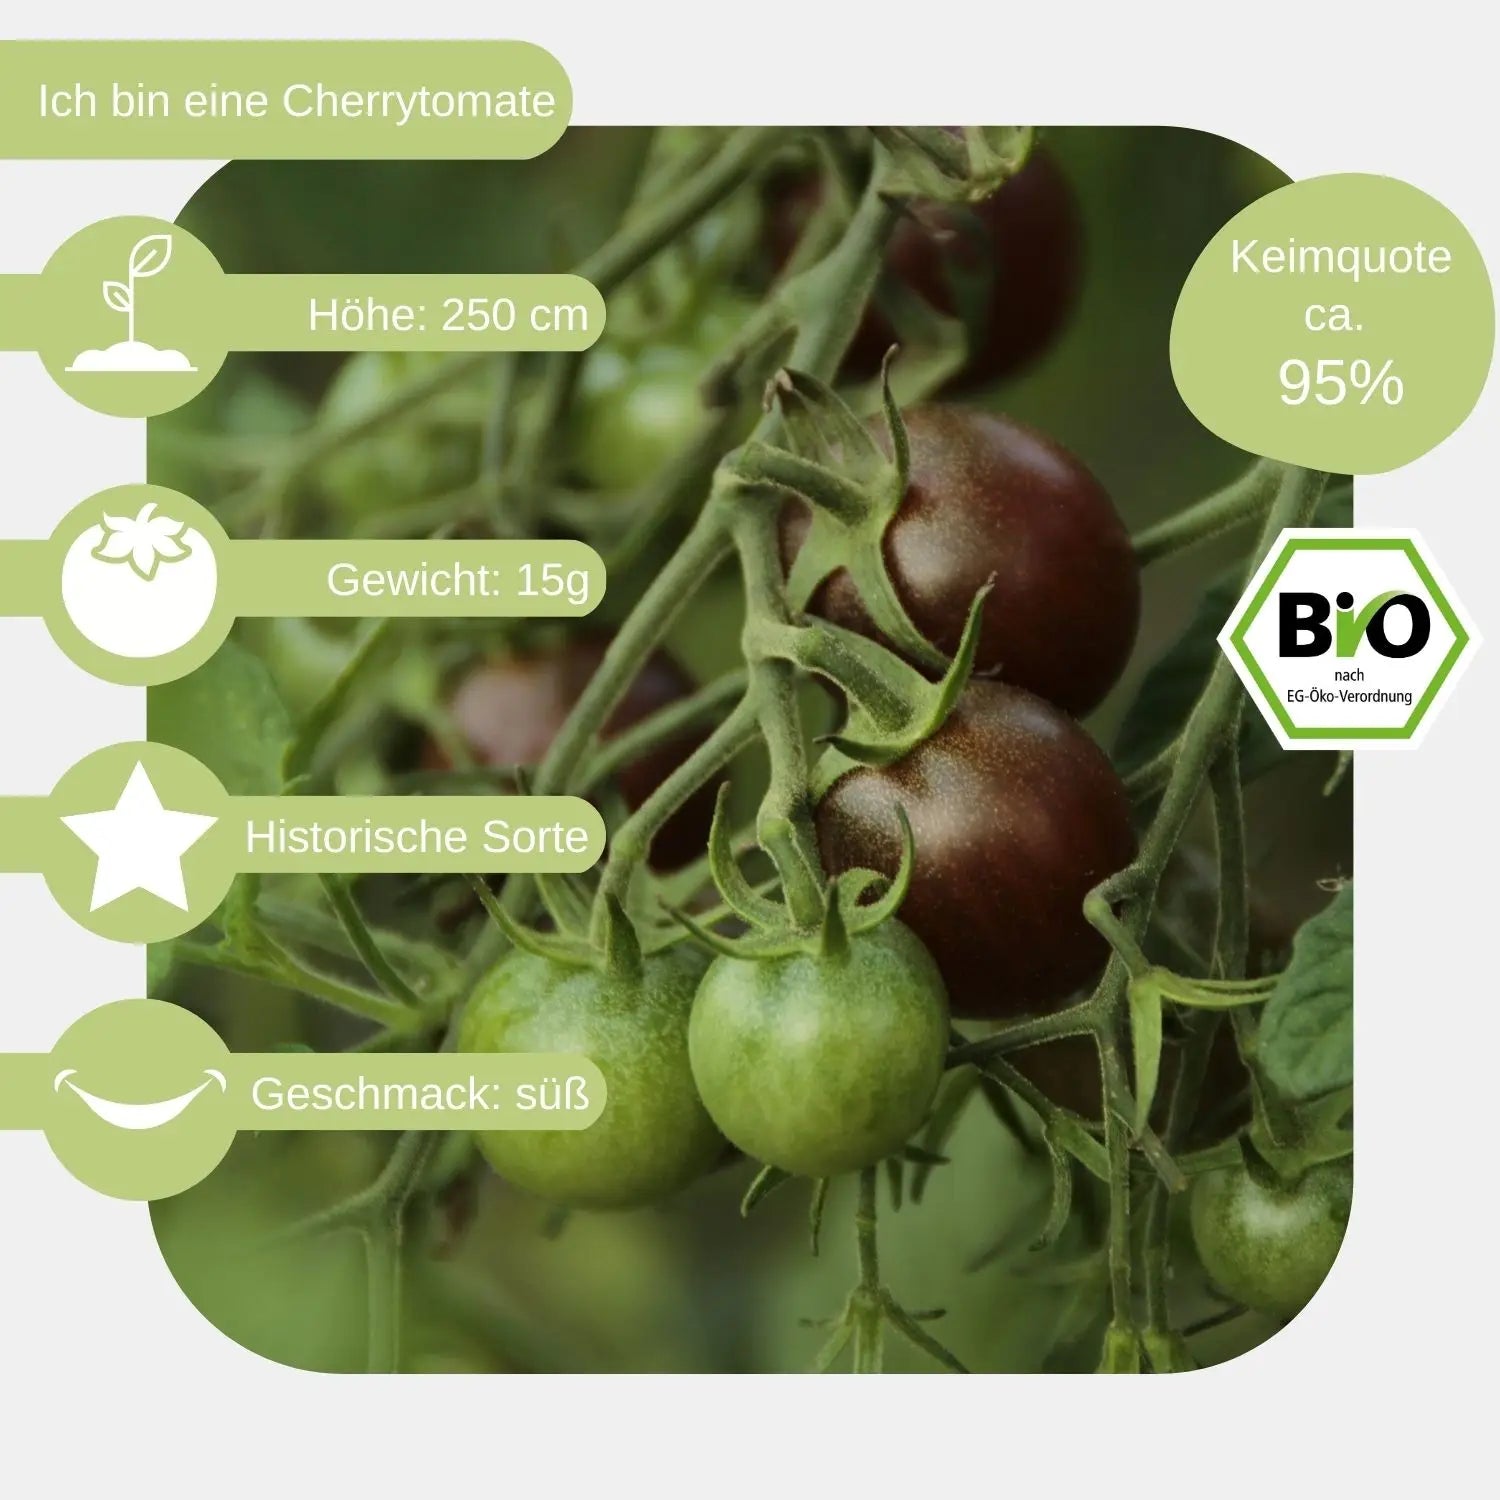 Bio-Cherrytomate-Black-Cherry-Samen-Eigenschaften